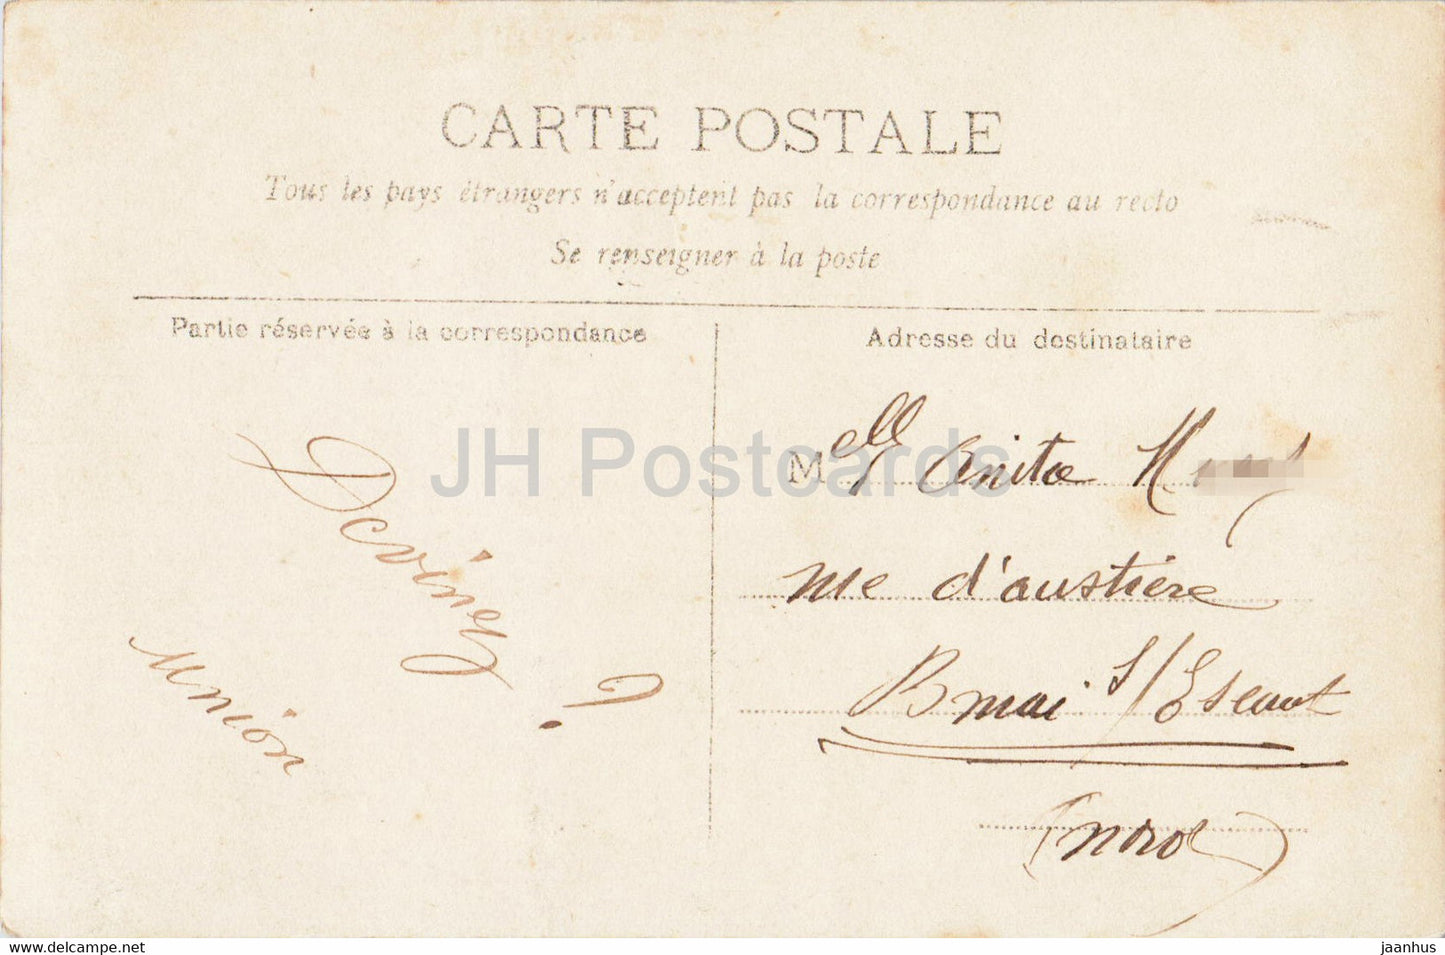 O fragiles bateaux - fille - maquette bateau - 1345 - carte postale ancienne - 1906 - France - occasion